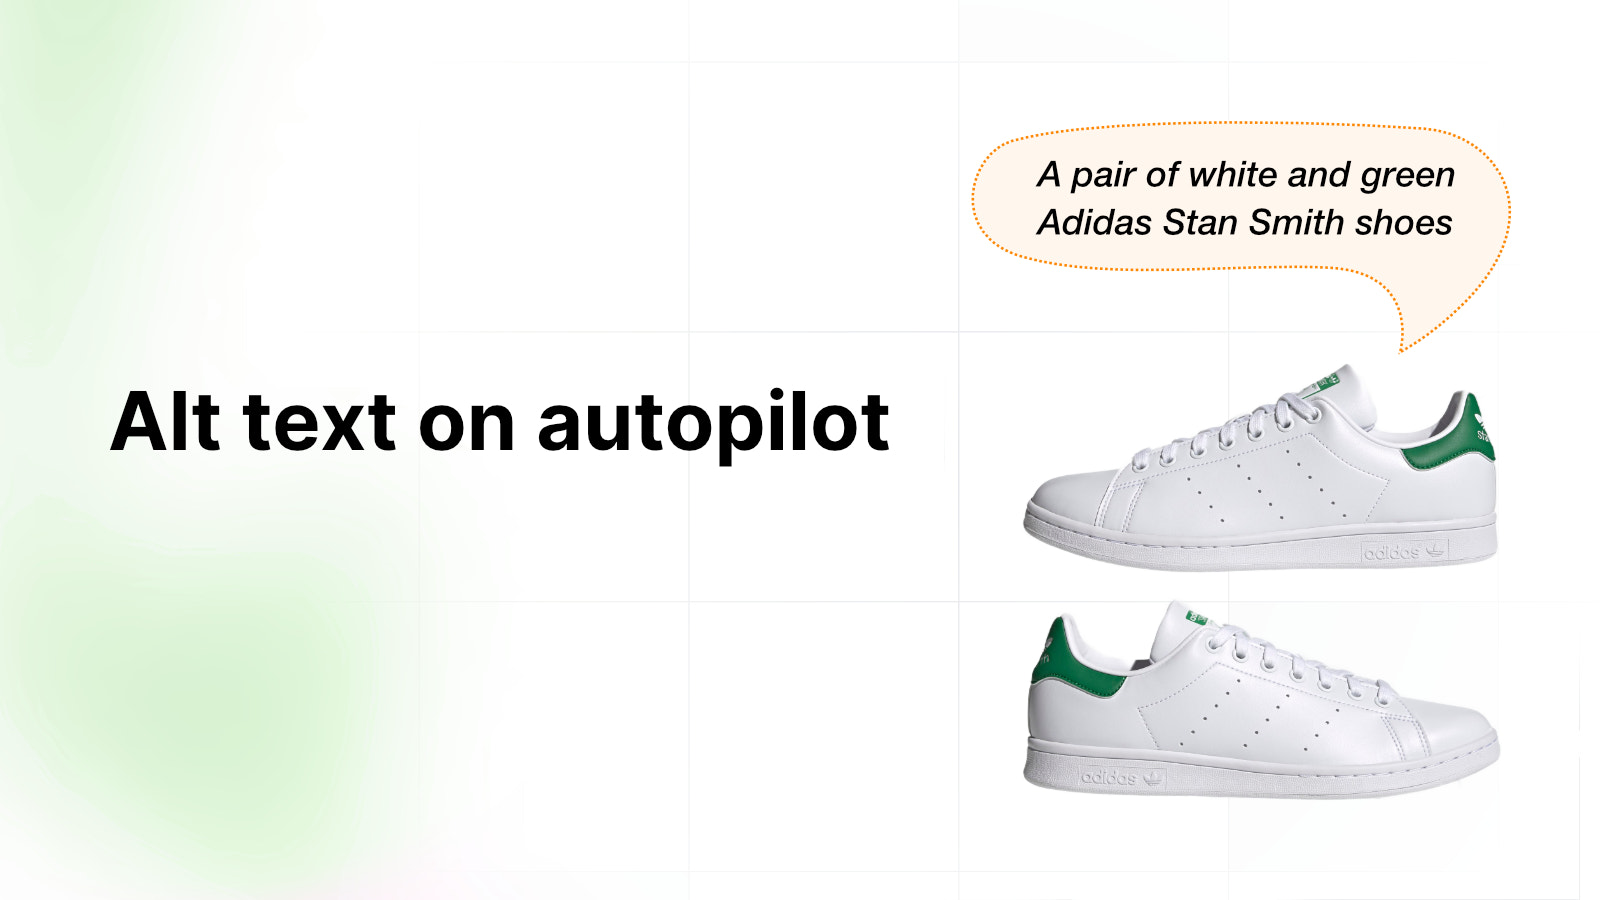 Een paar witte en groene schoenen